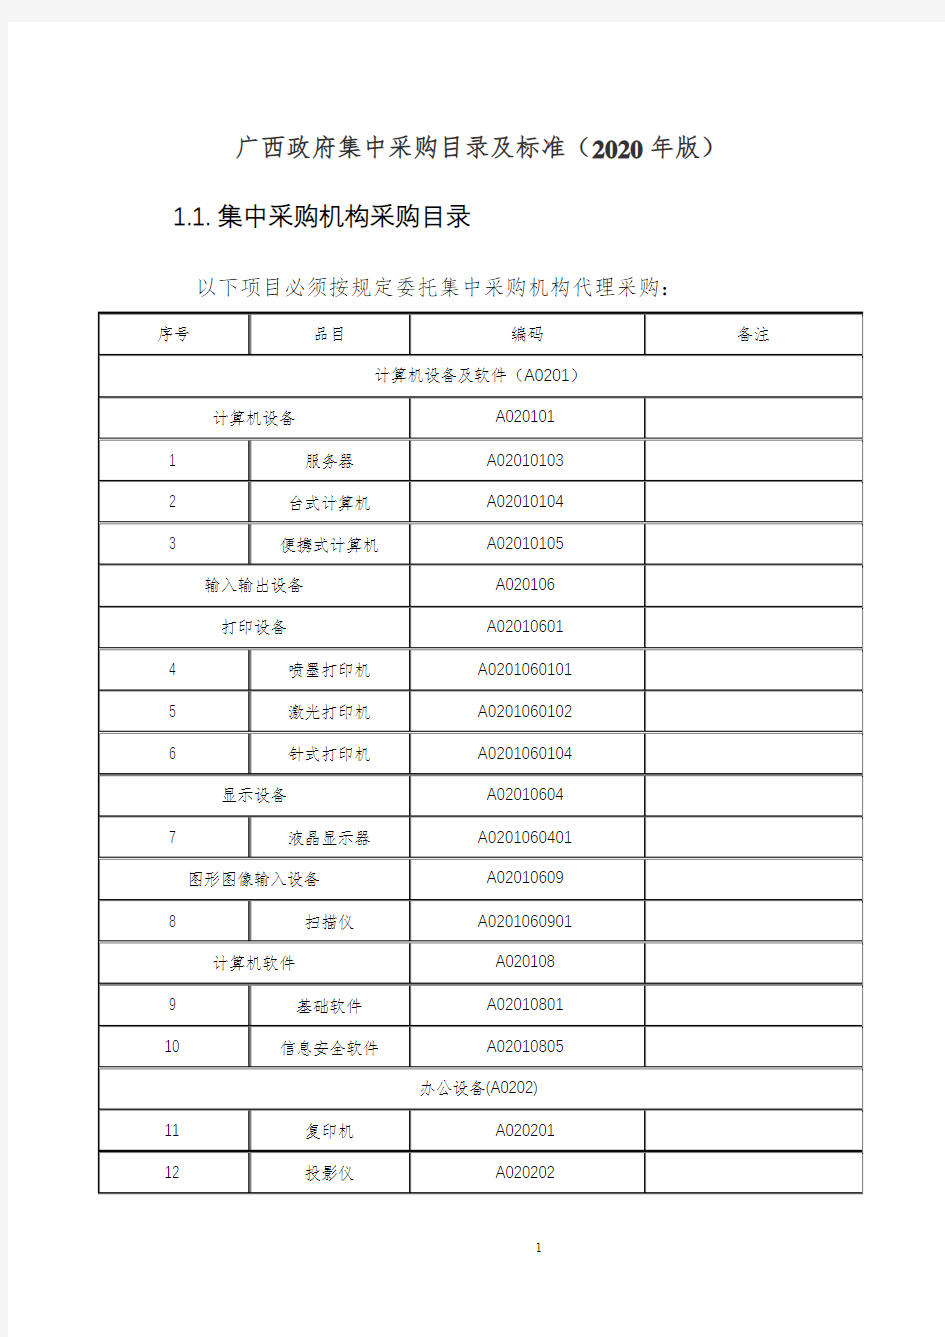 广西政府集中采购目录及标准(2020年版)